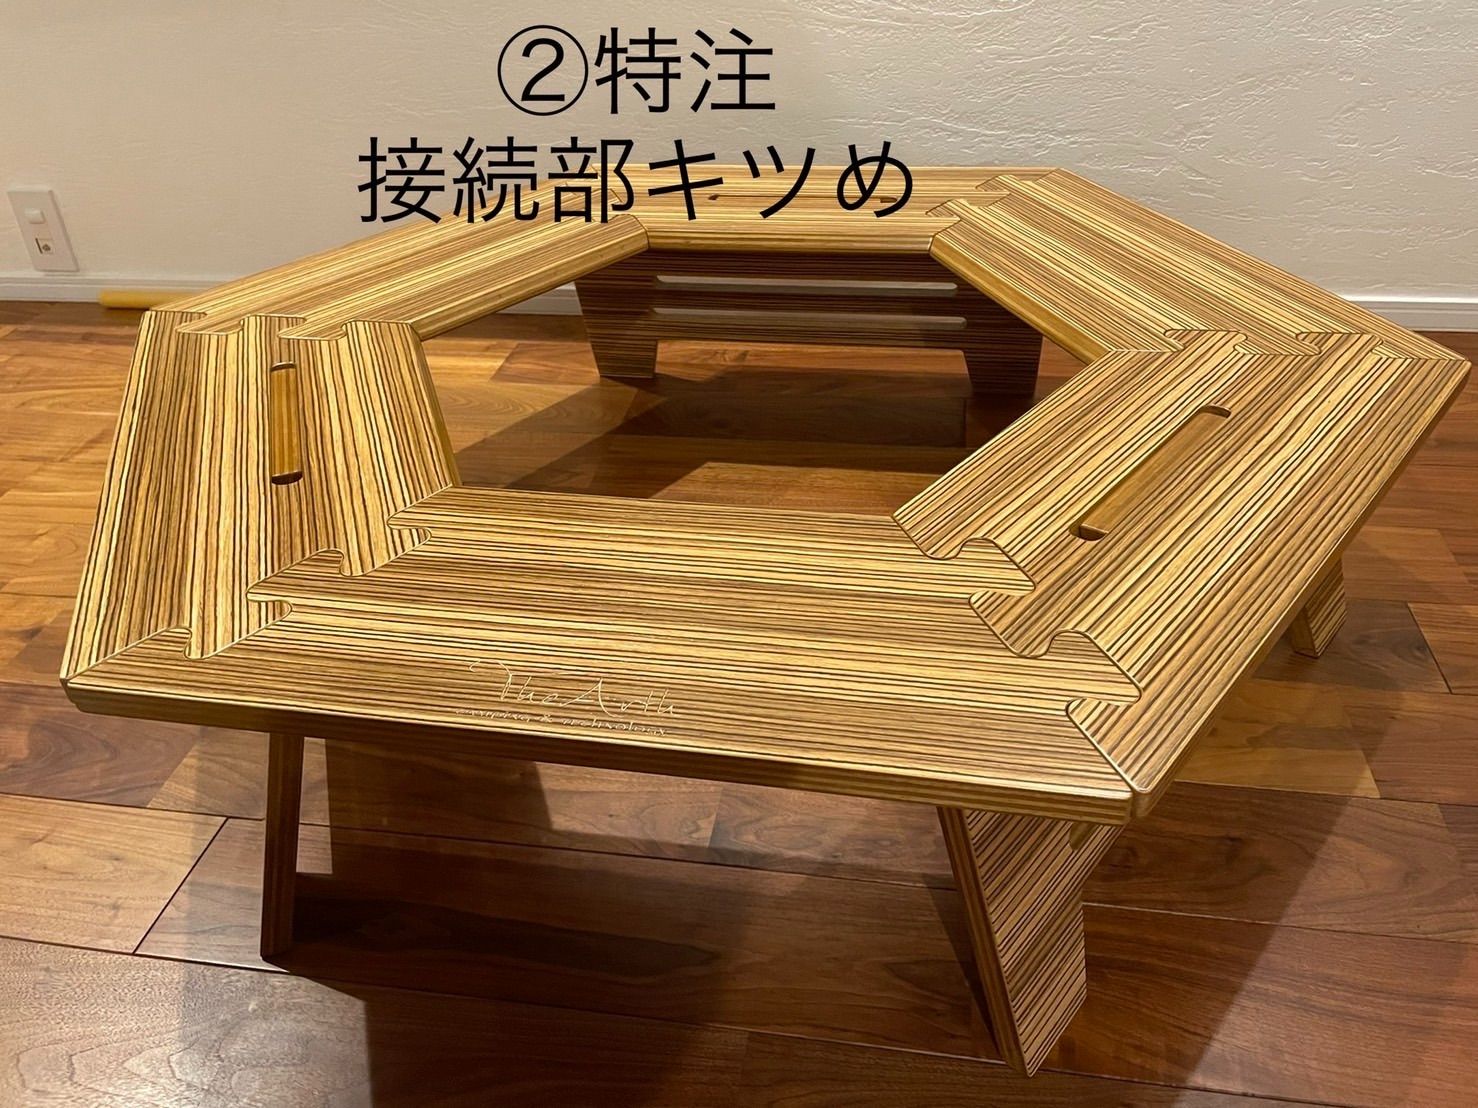 クル次郎 - テーブル